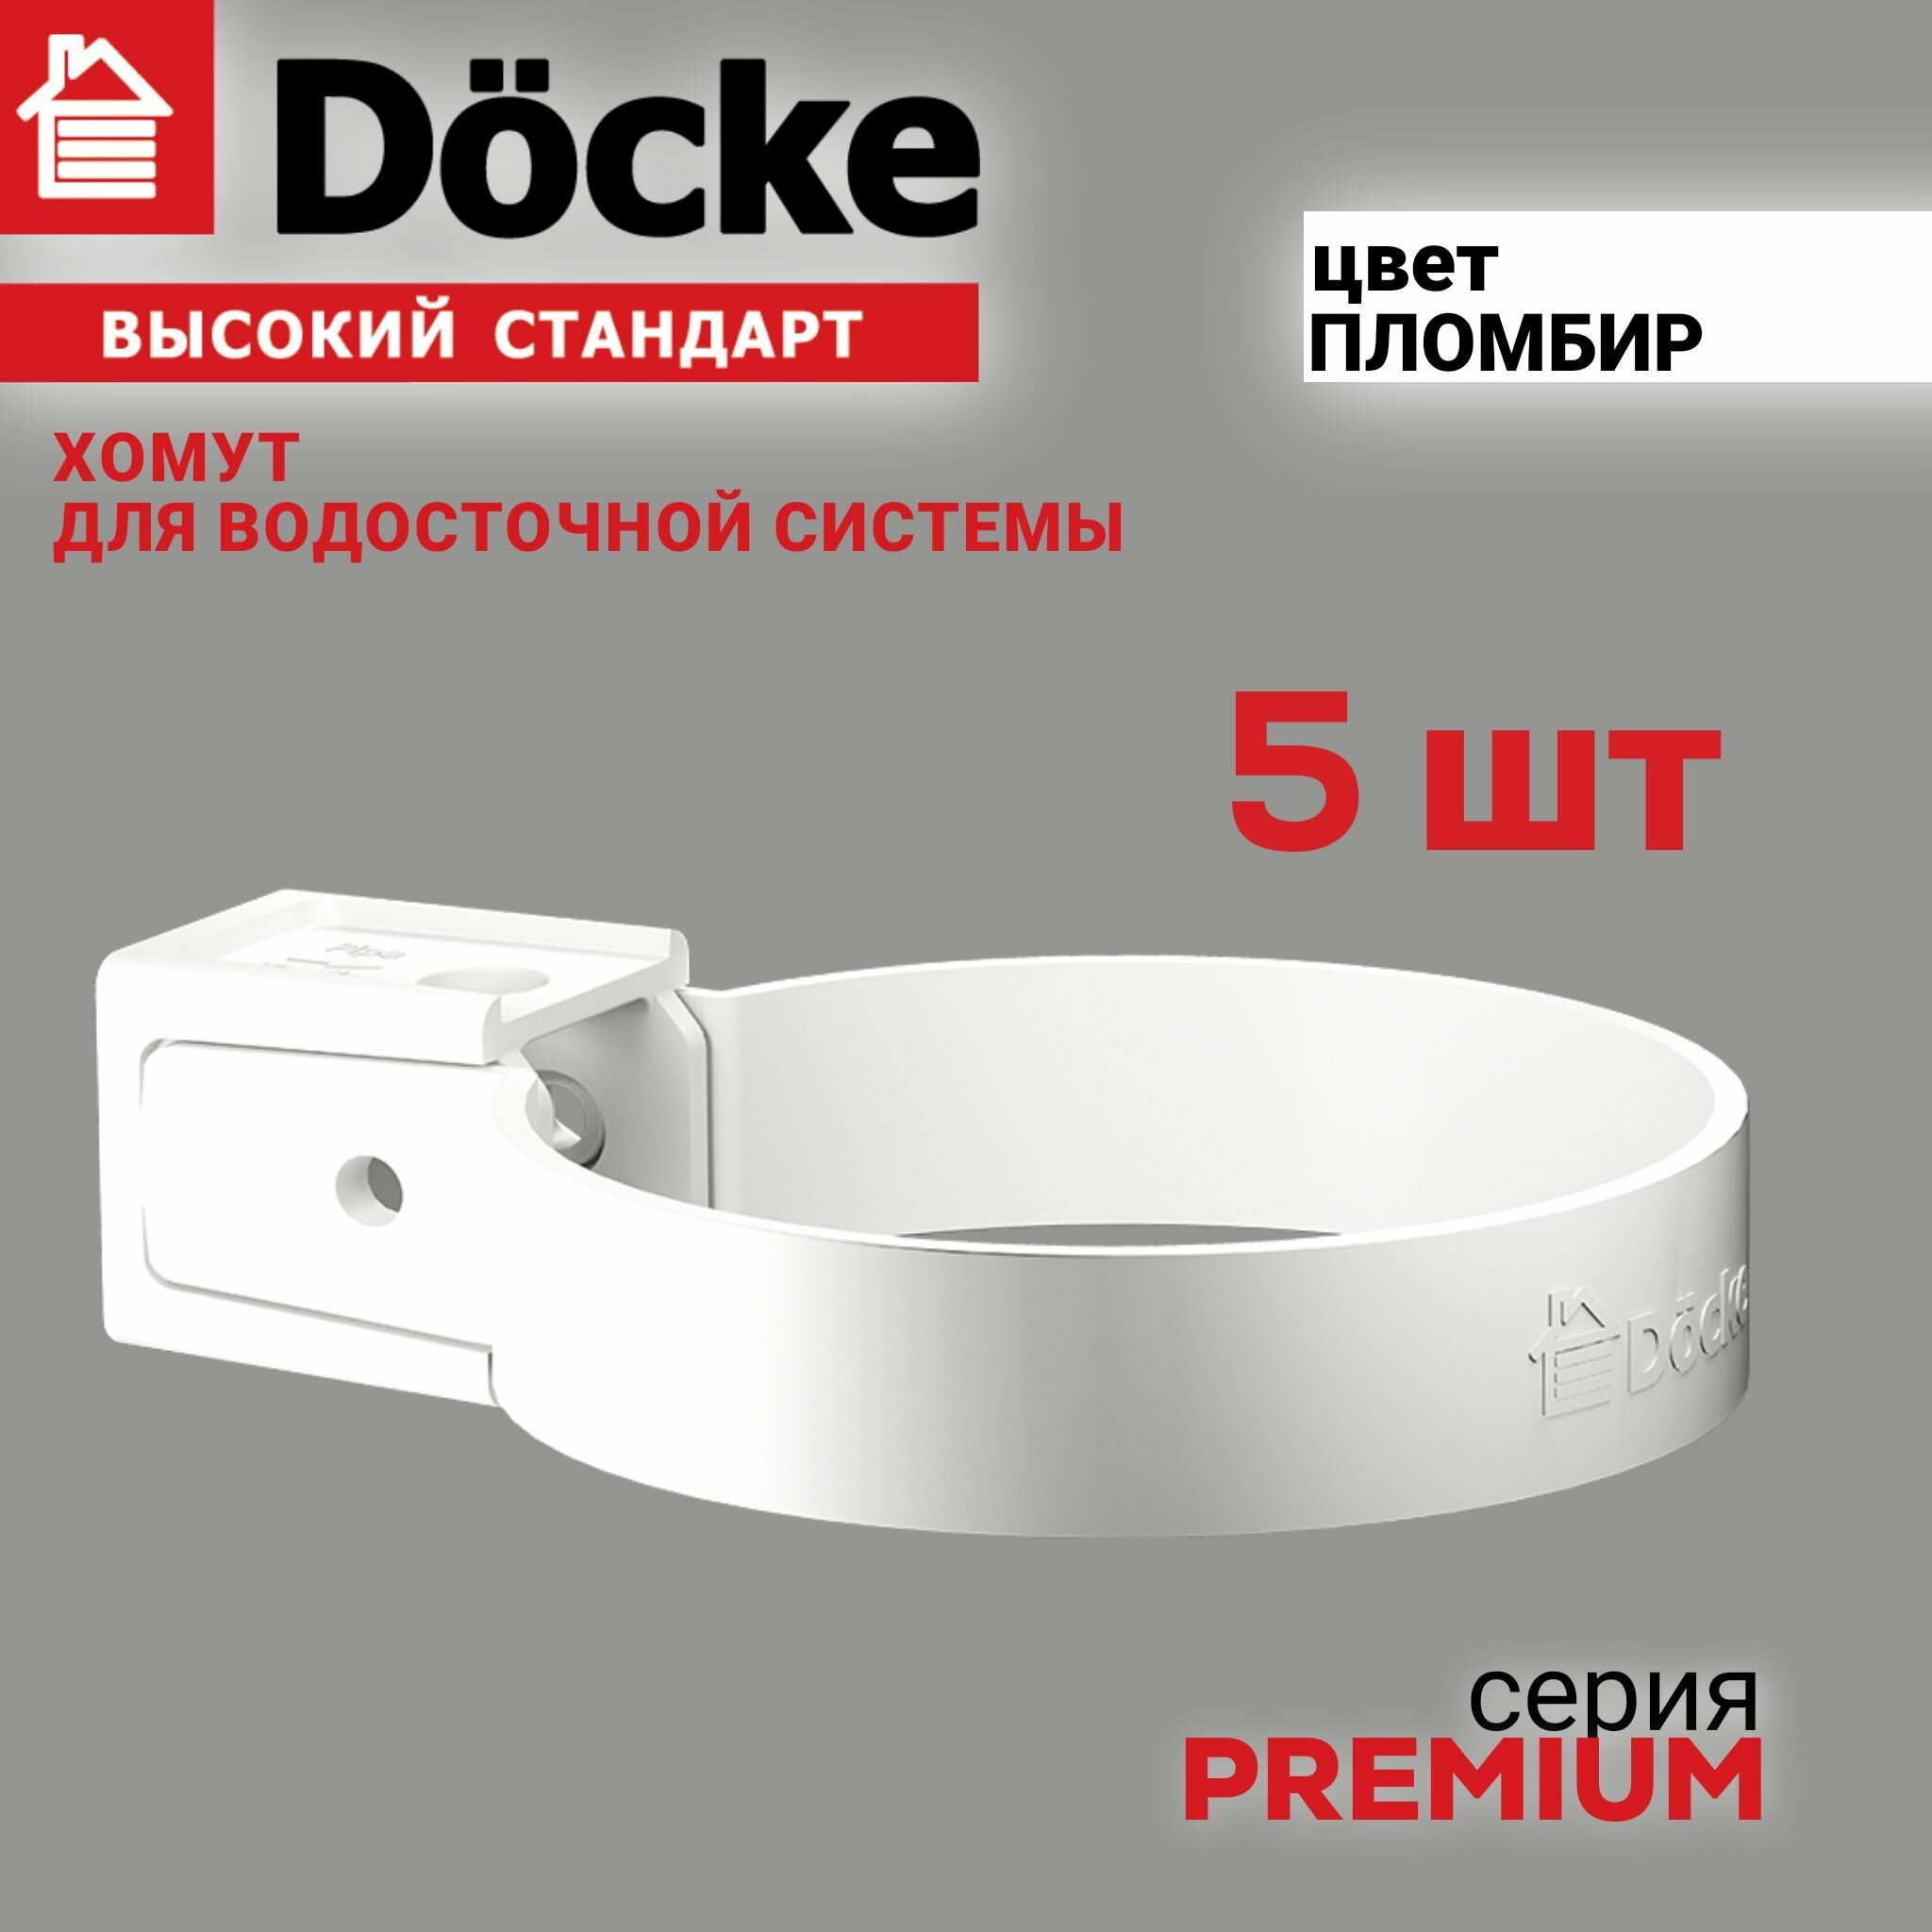 Хомут универсальный Docke Premium (пломбир) 5 шт Крепление элементов водосточной системы на фасаде здания